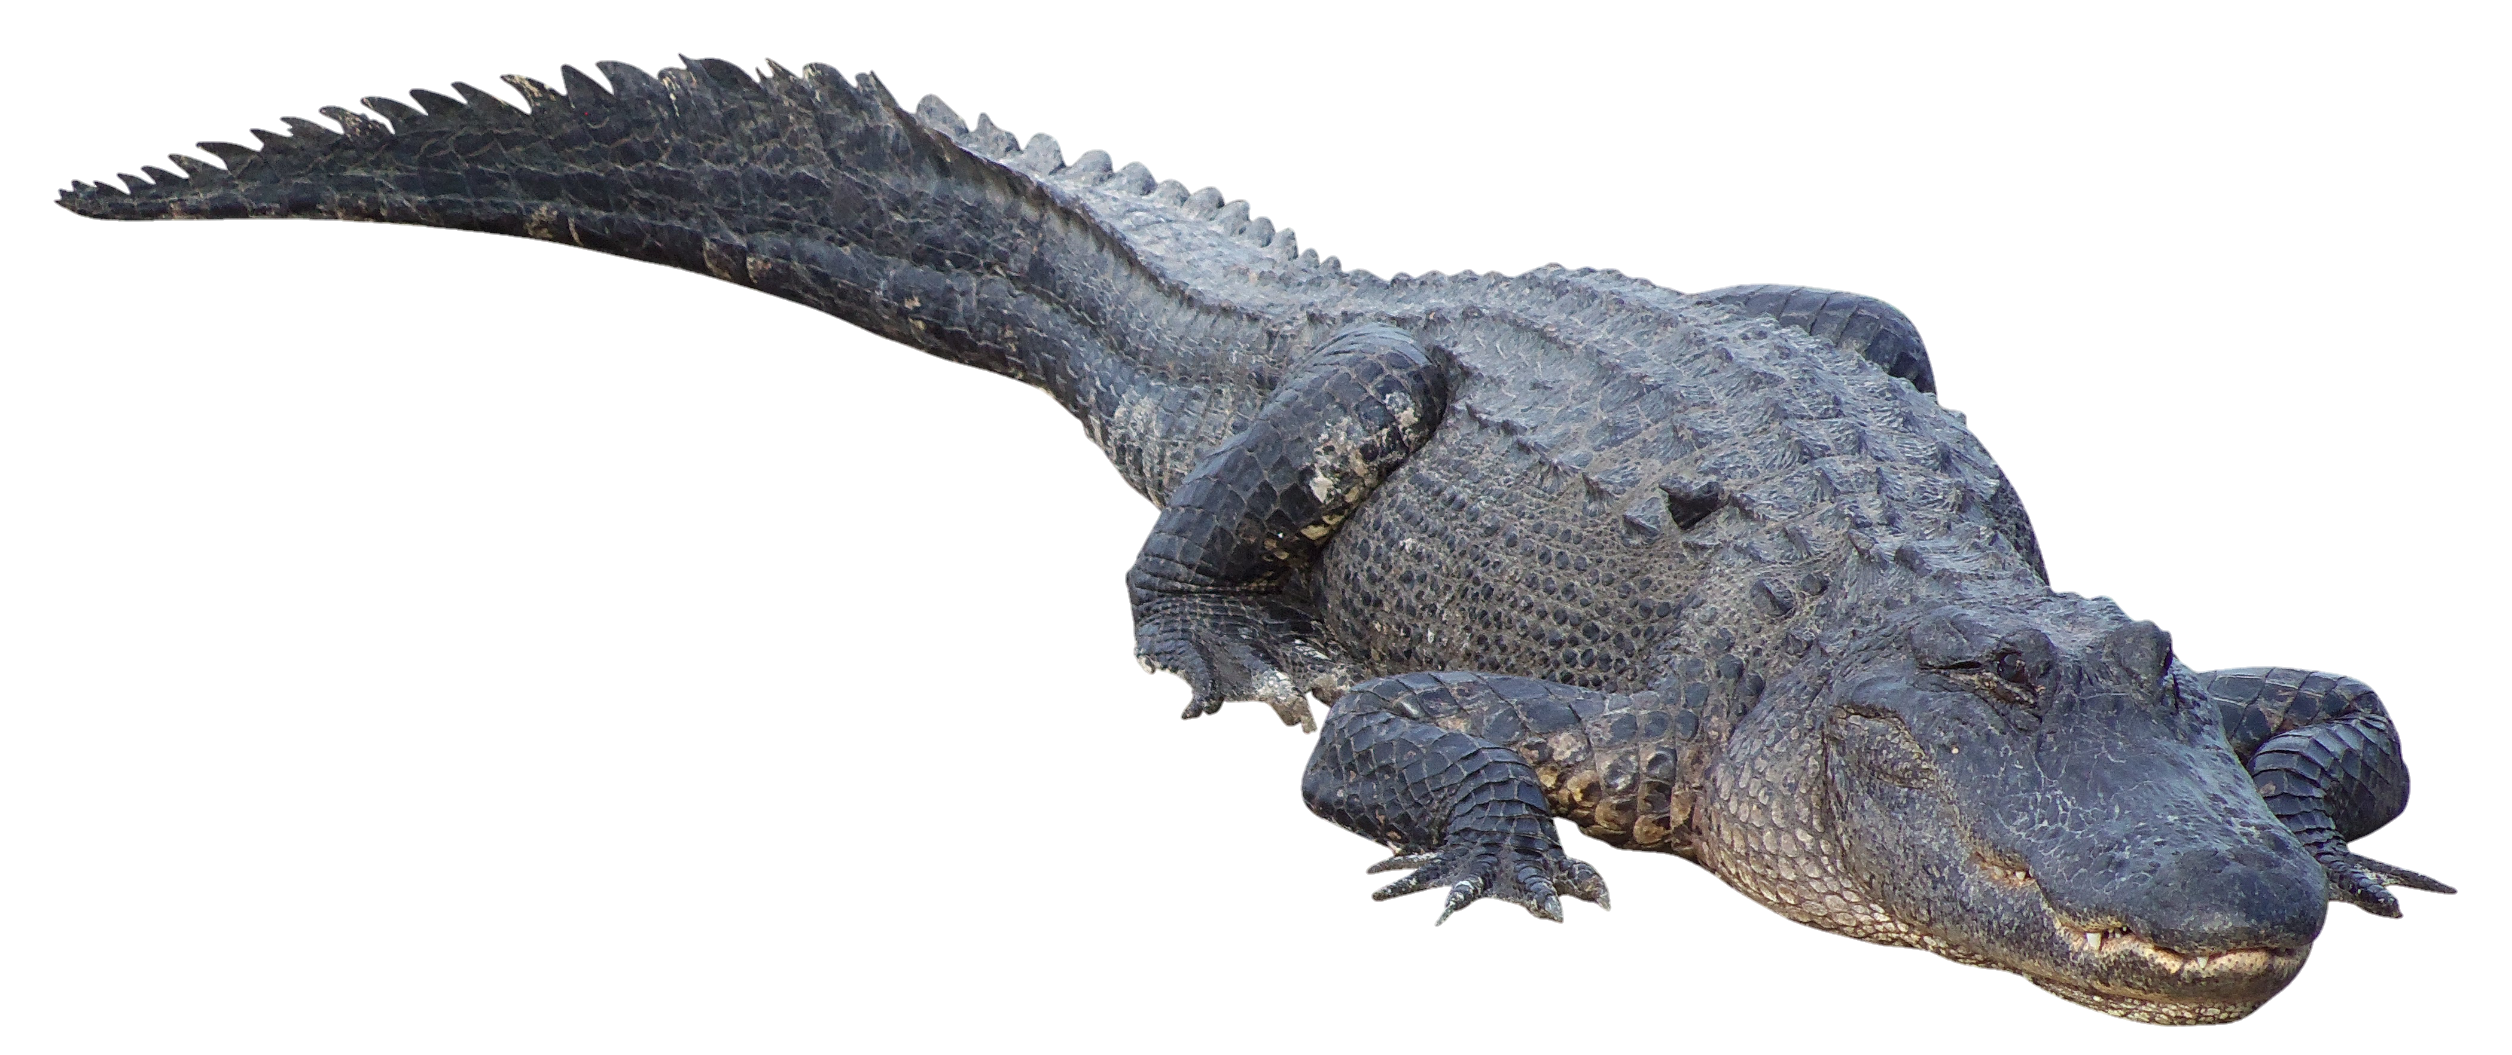 Crocodile-12